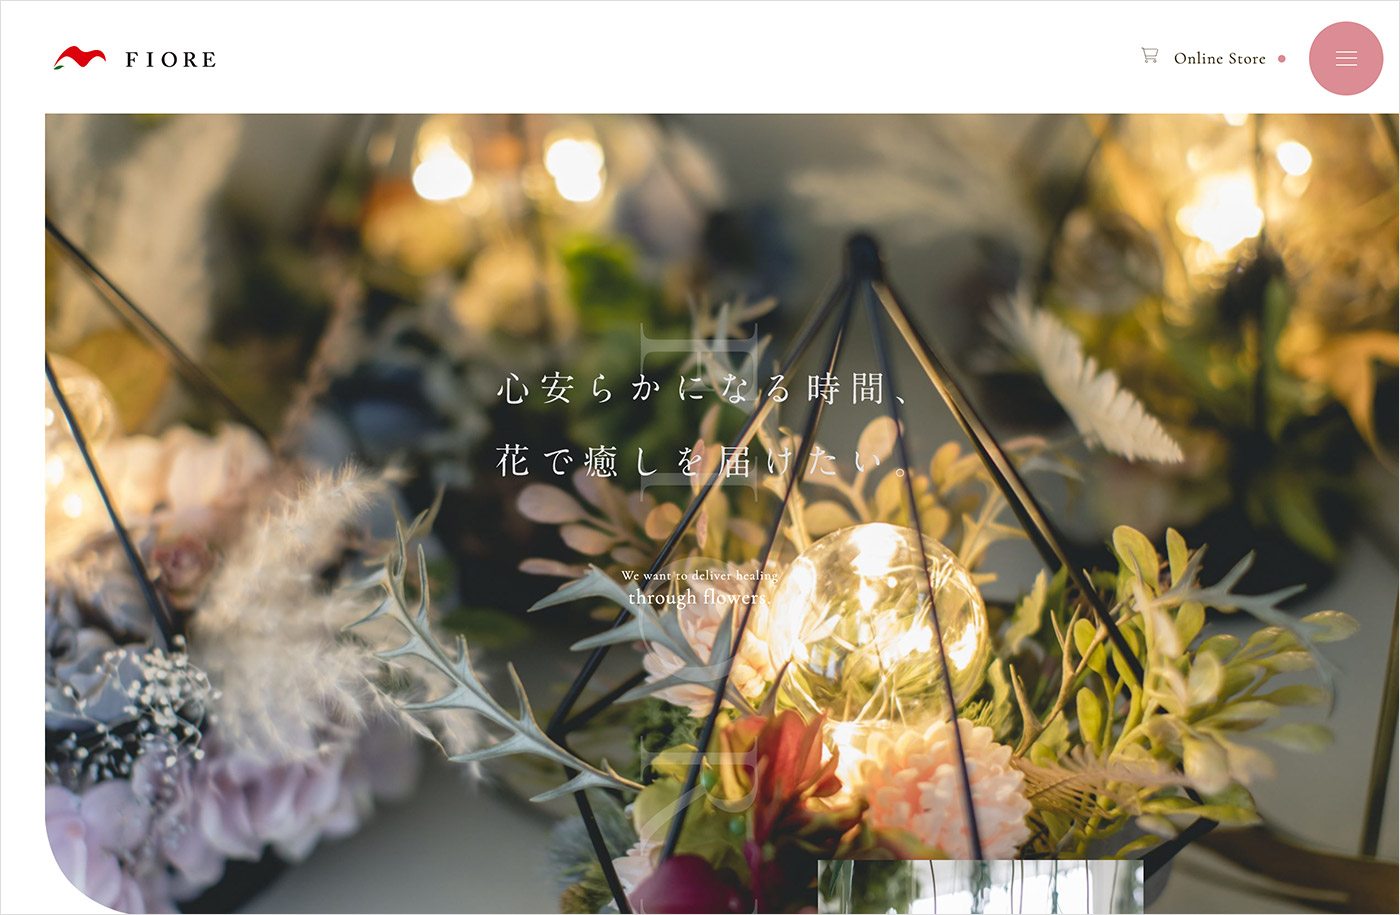 大阪府和泉市の葬儀用花・フラワーインテリアの販売 | 株式会社フィオーレウェブサイトの画面キャプチャ画像